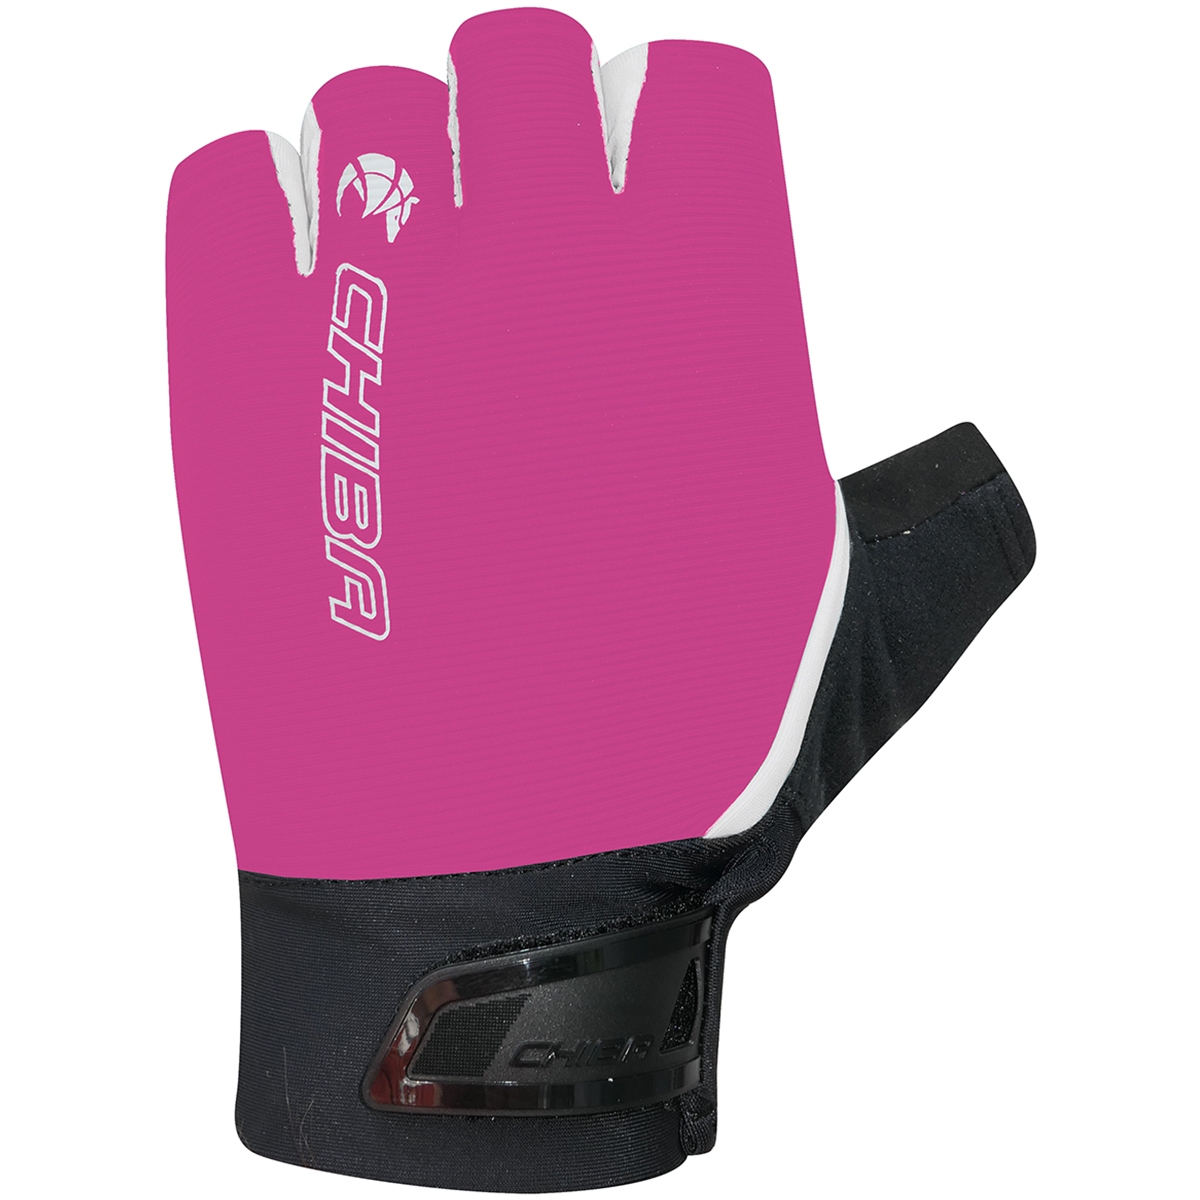 Produktbild von Chiba Superlight Kurzfinger-Handschuhe Damen - pink